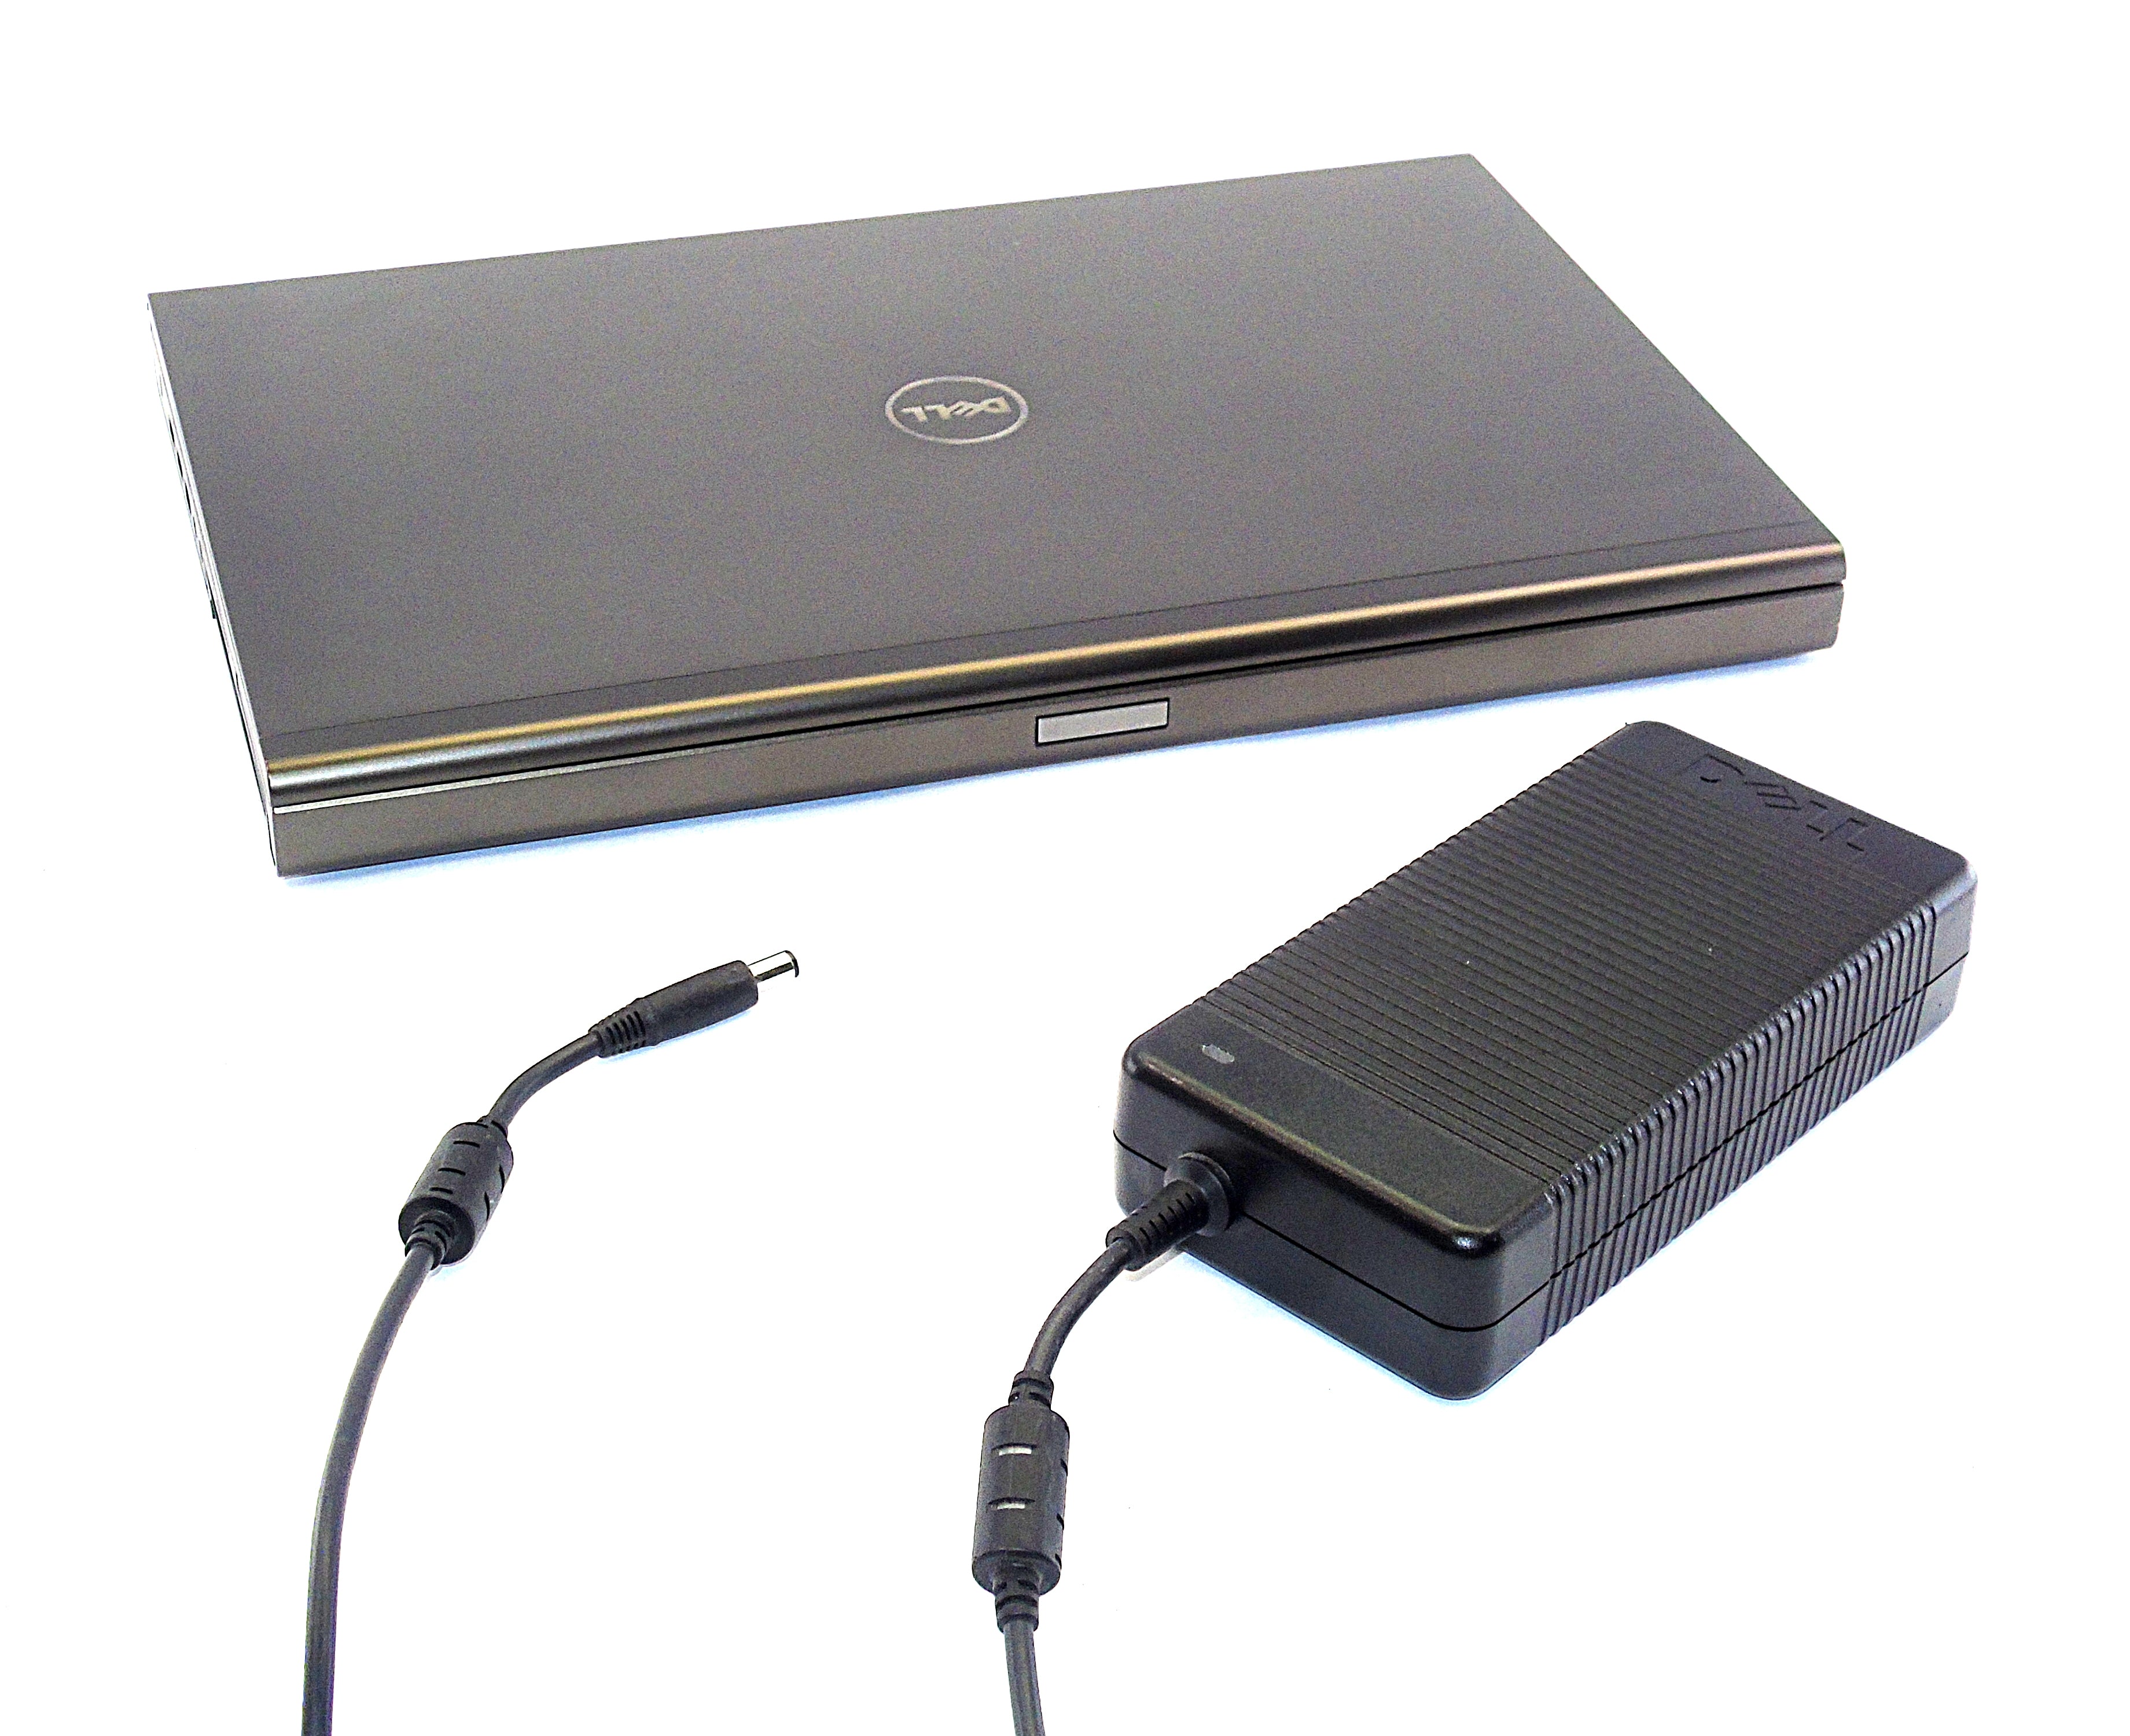 Dell Precision M6700 Laptop, 17.3" Core i5, 8GB RAM, 512GB SSD